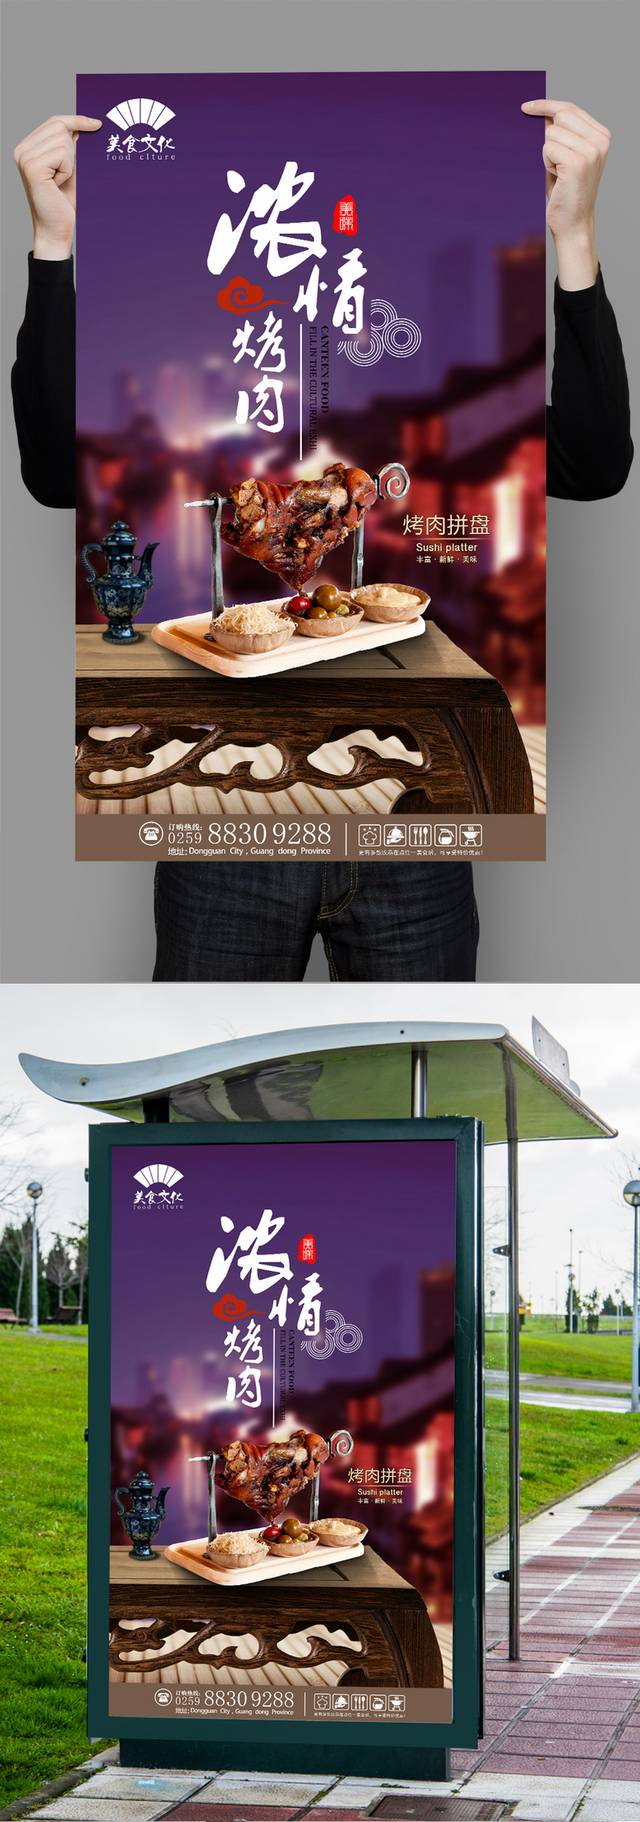 高清烤肉宣传海报设计